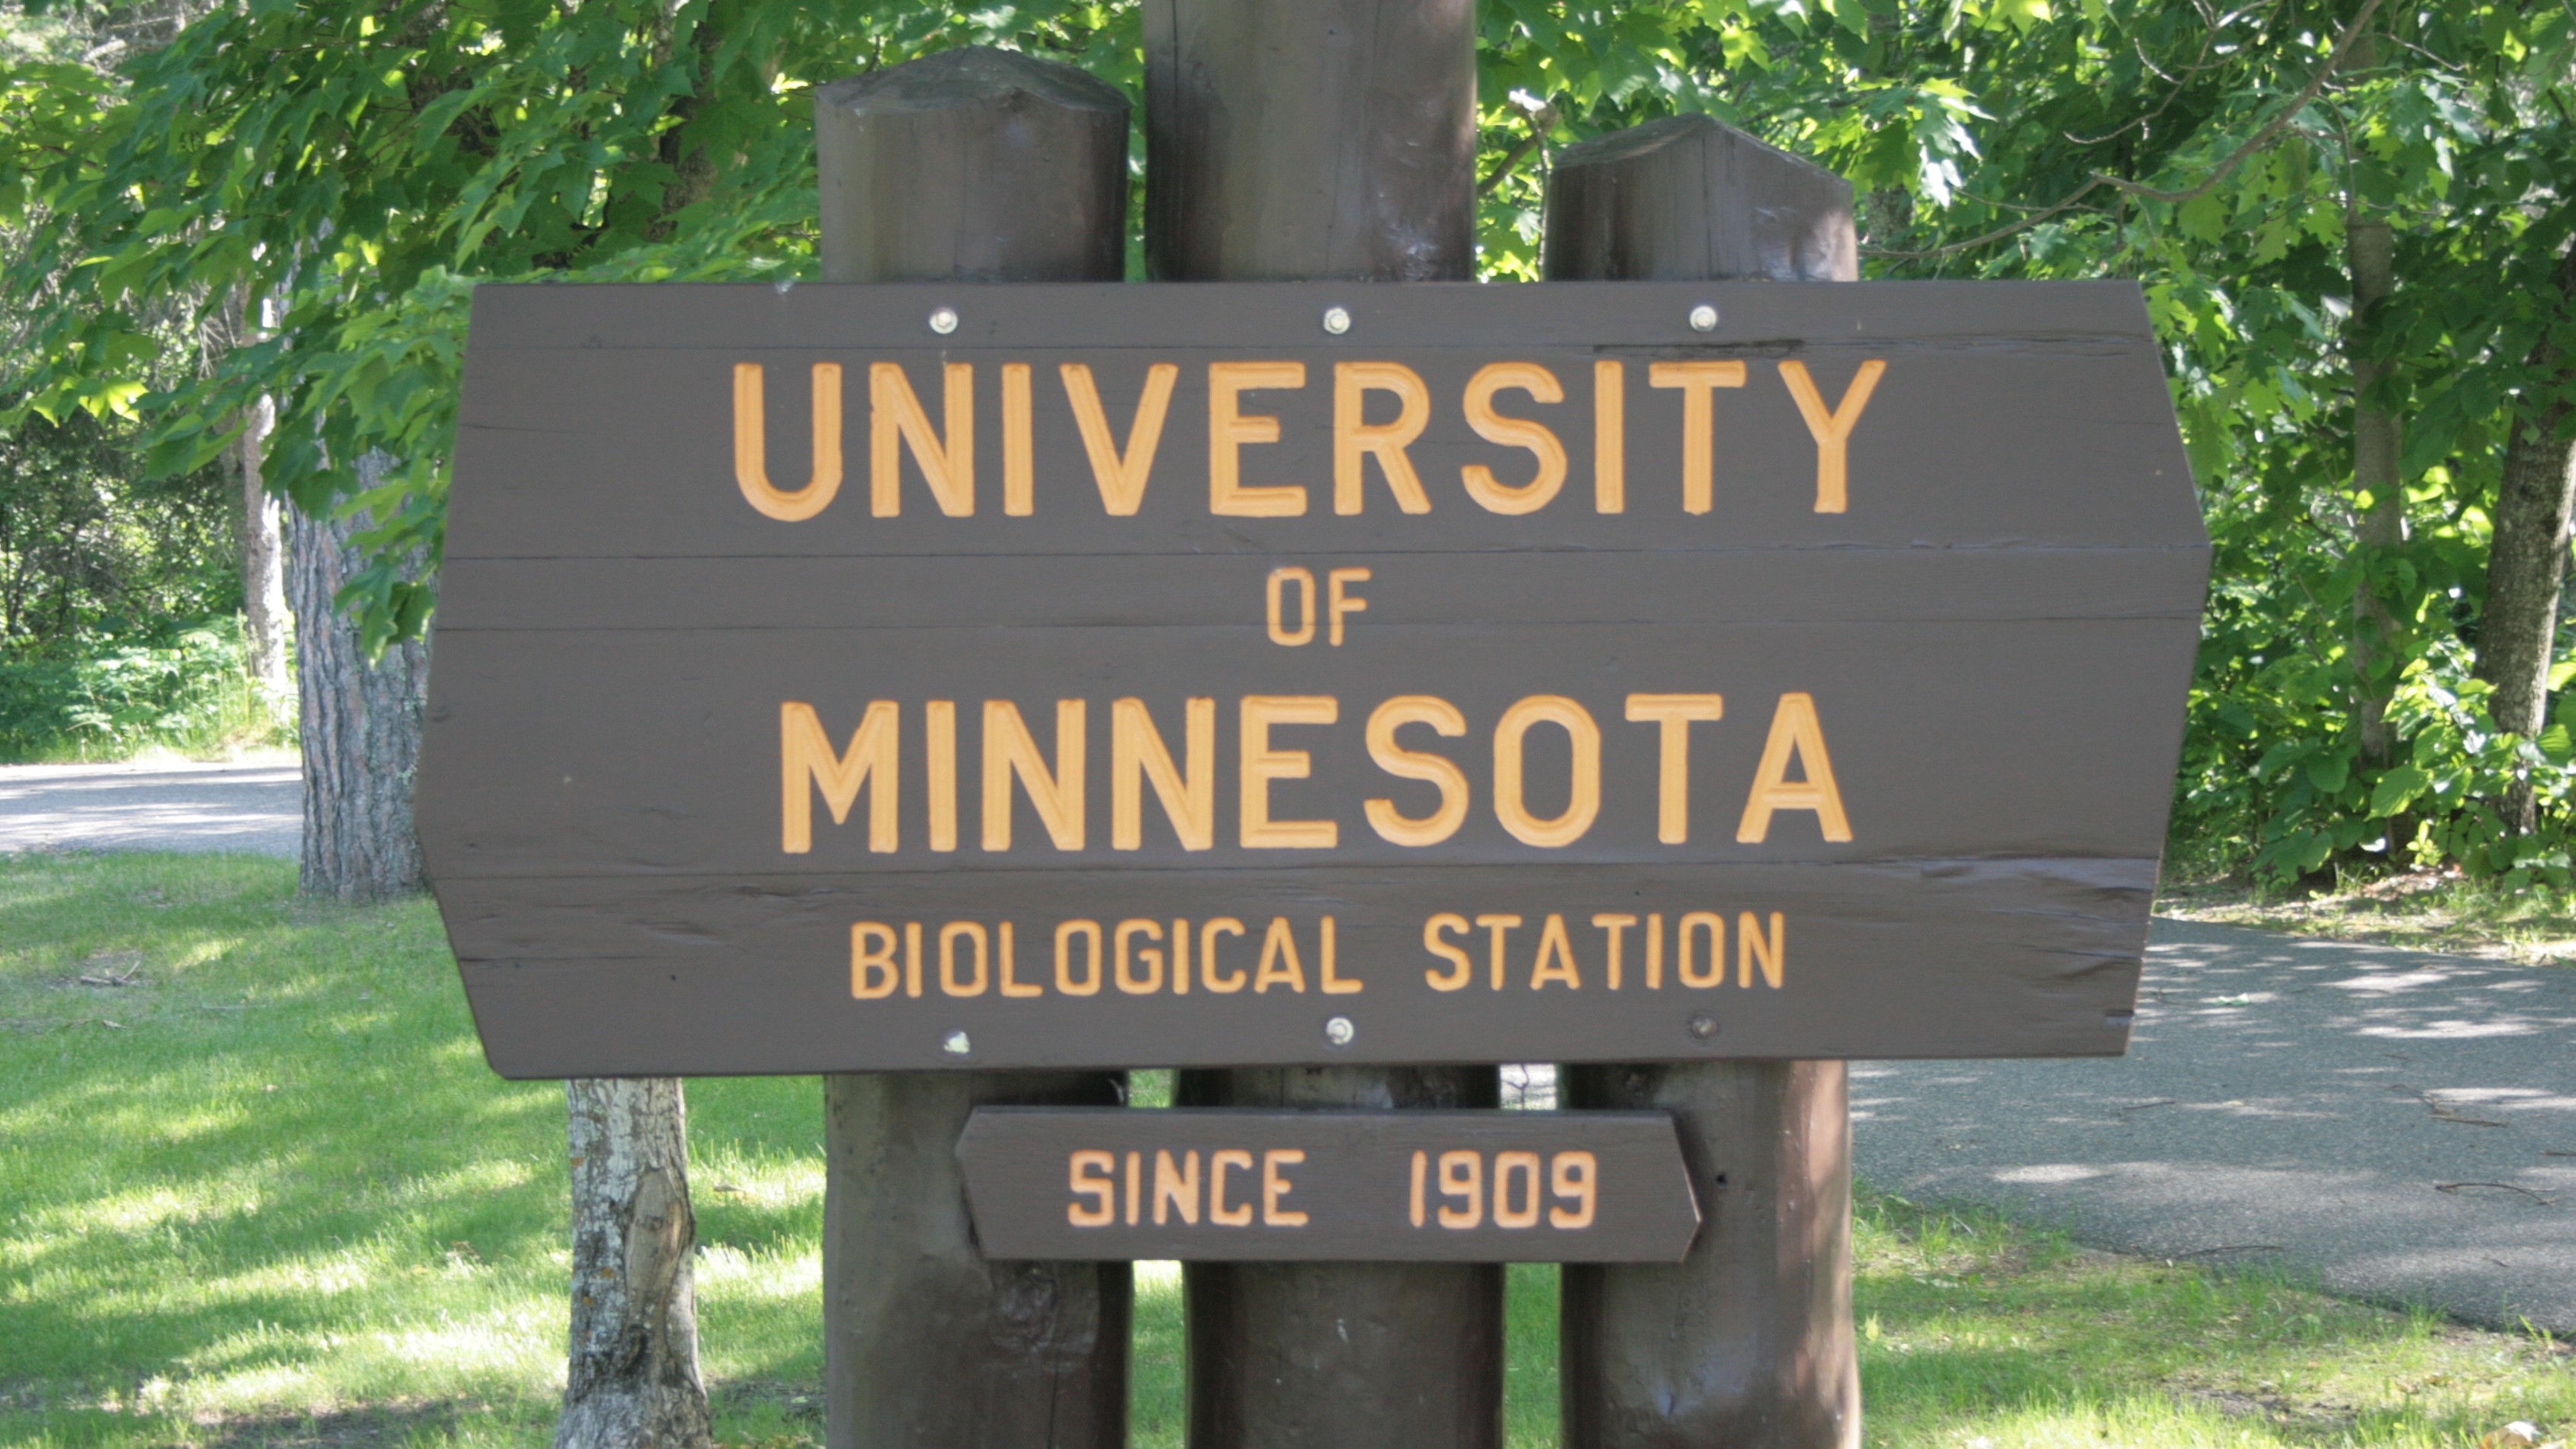 Itasca entrance sign: University of Minnesota Biological Station